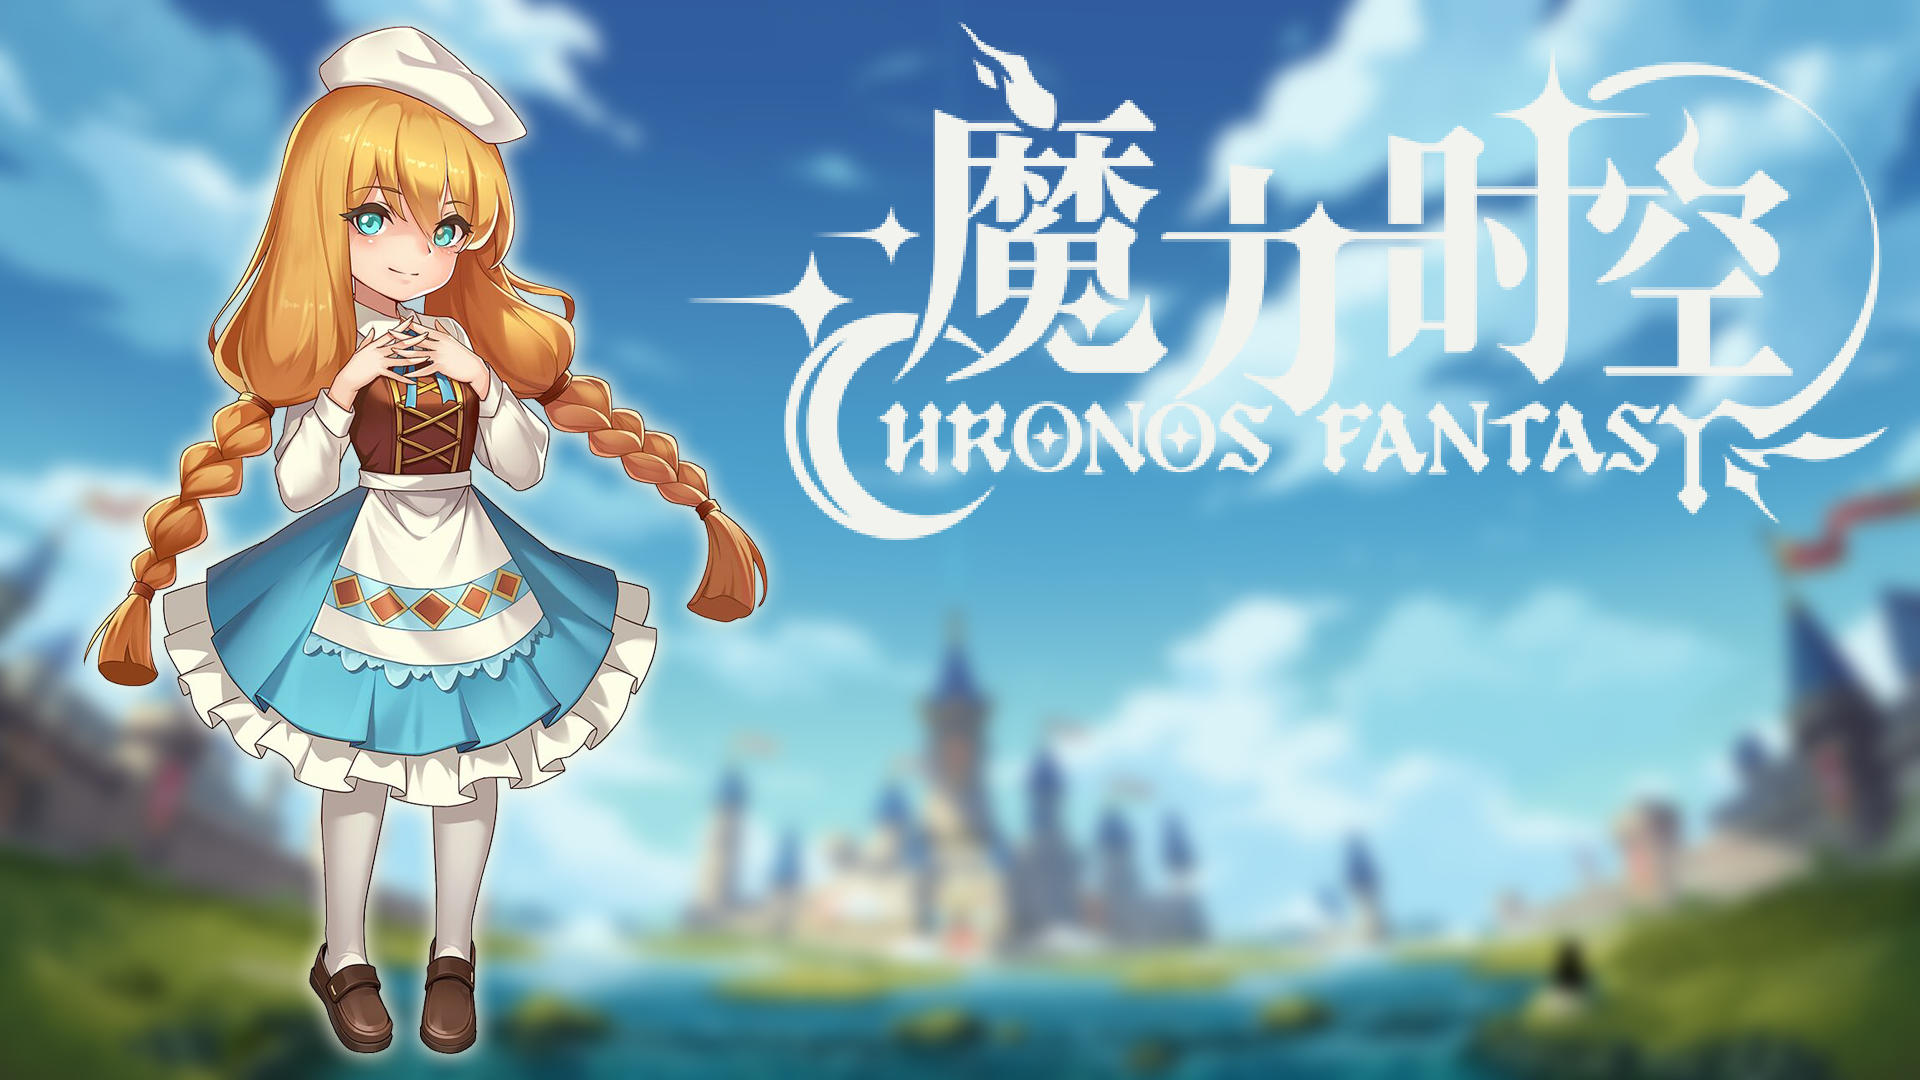 Banner of Fantasi Chronos 